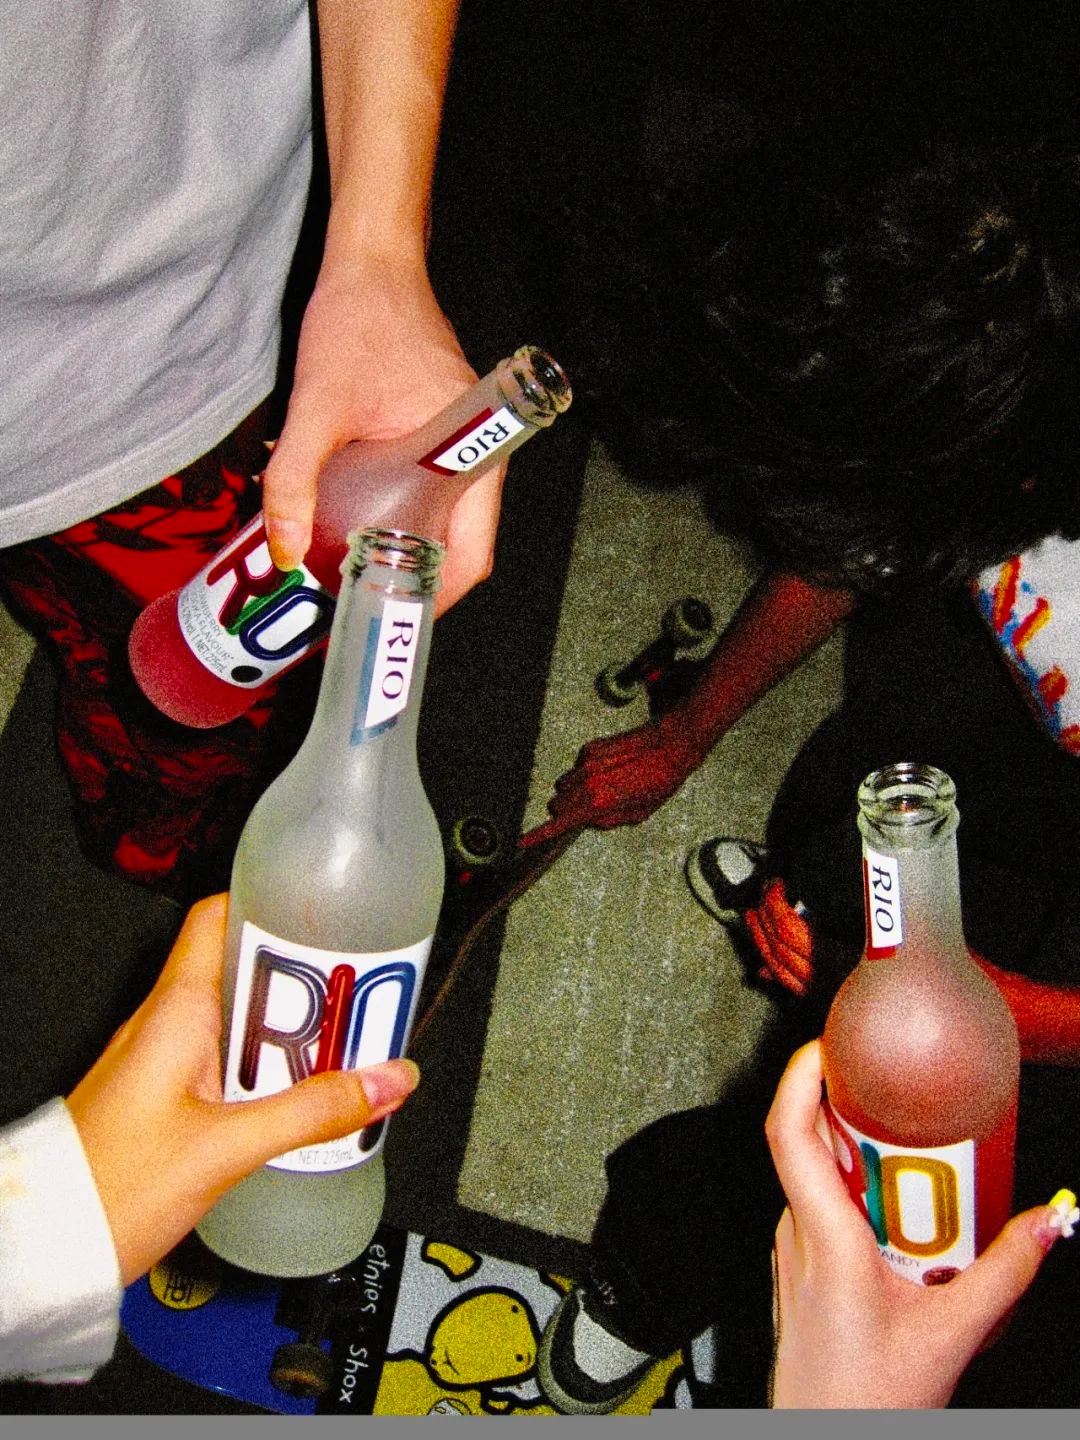 低度酒饮对以往不太爱喝酒的年轻人来说接受度更高。图片来源：RIO 官方微博